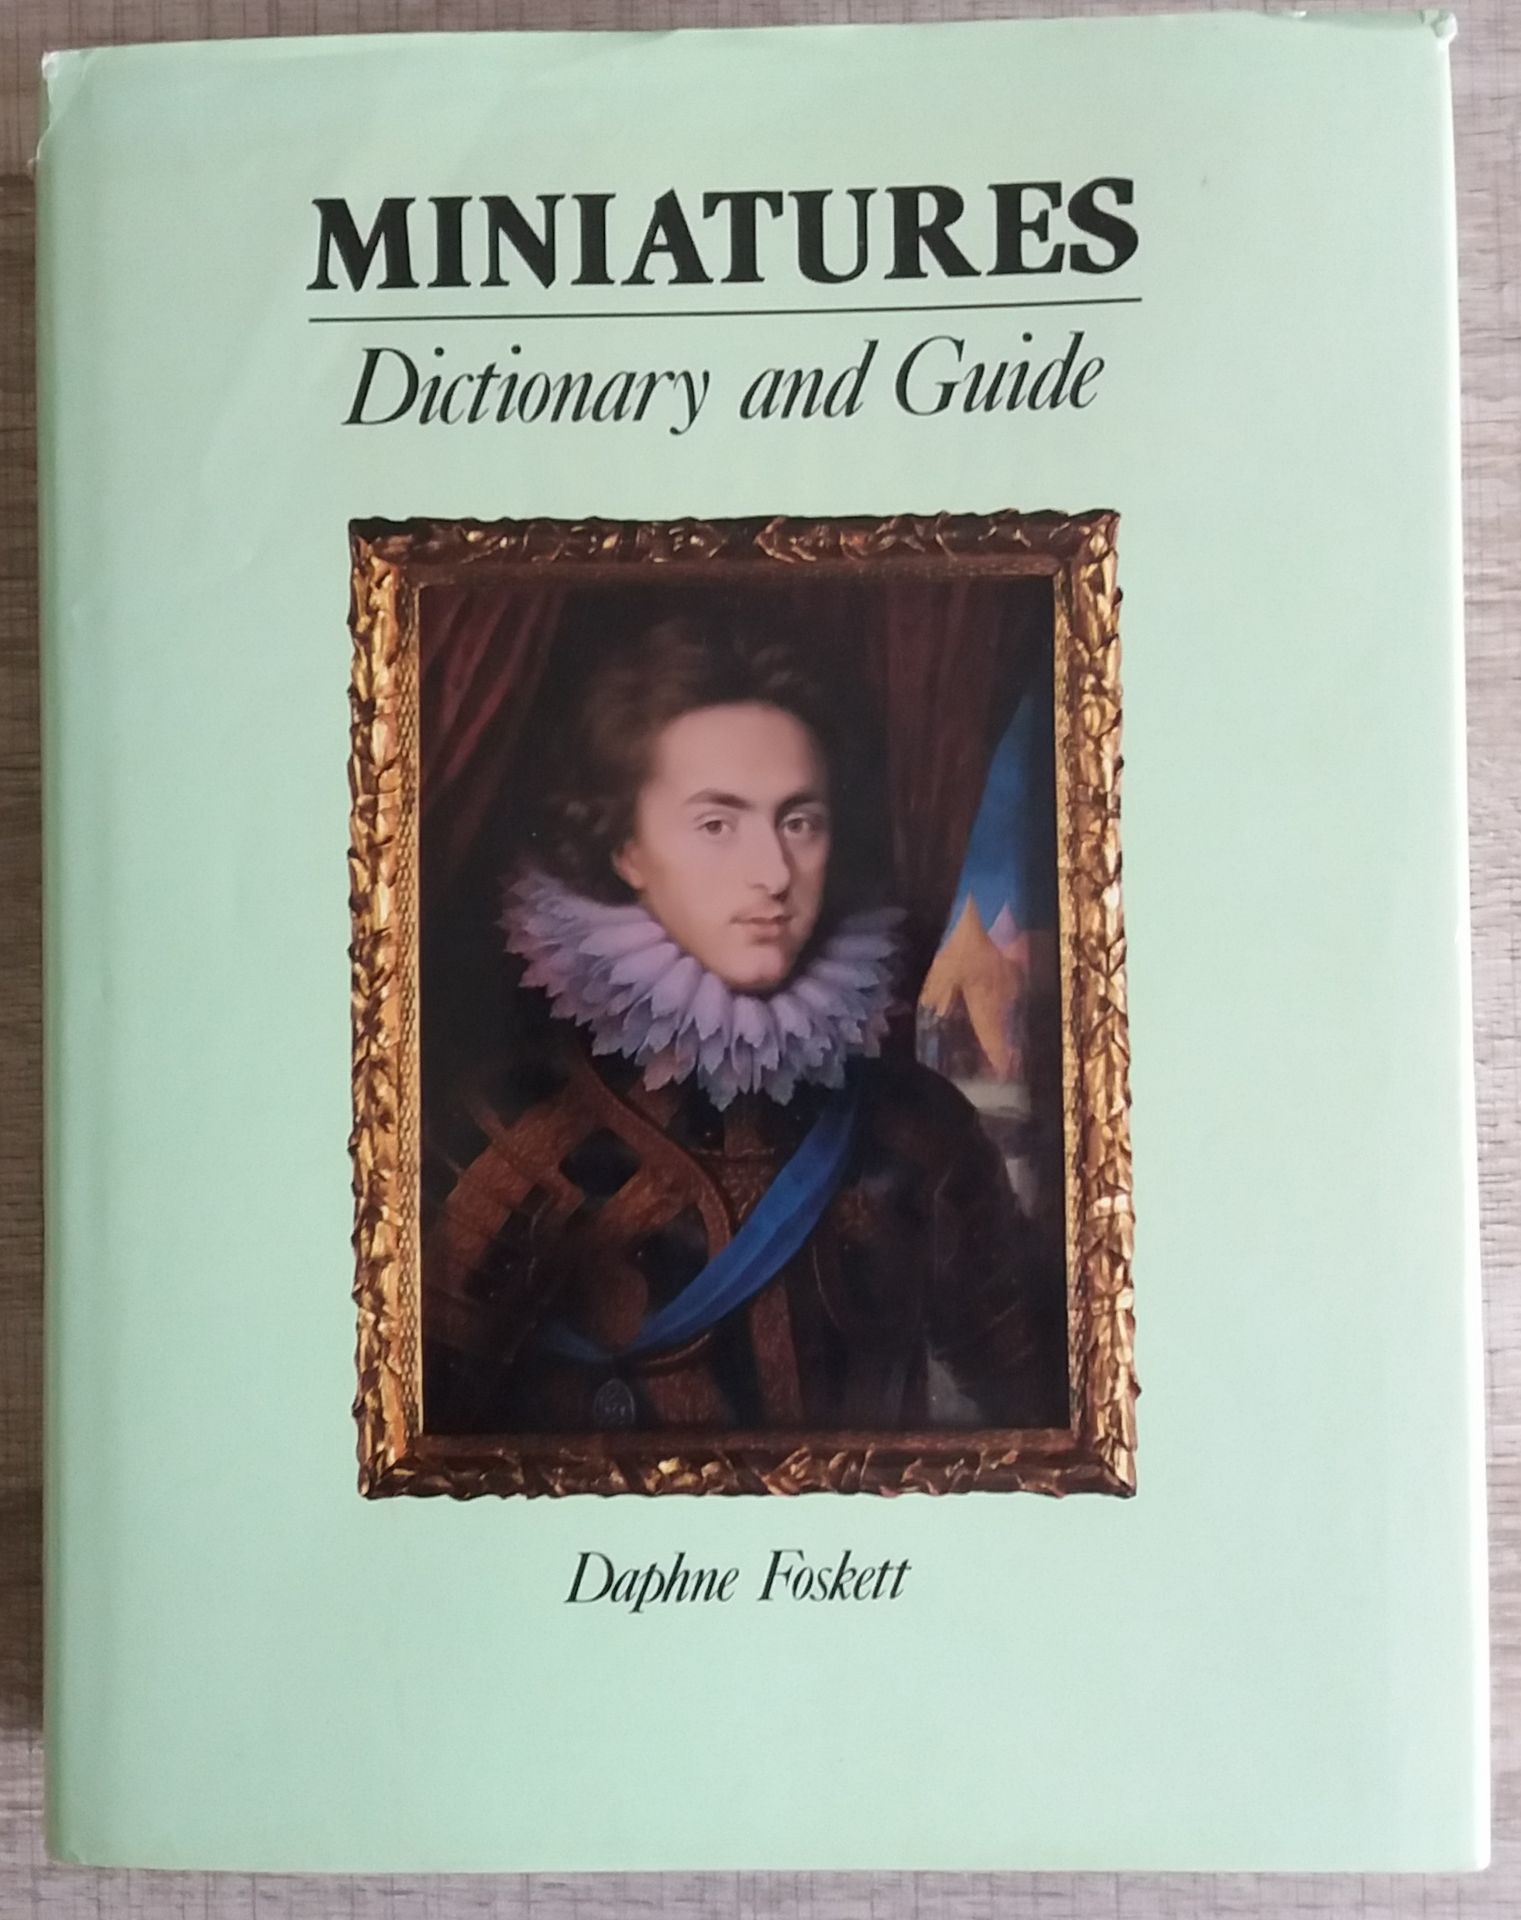 Null [MINIATURES]
1 ouvrage de référence sur la Miniature.

*Miniatures. Diction&hellip;